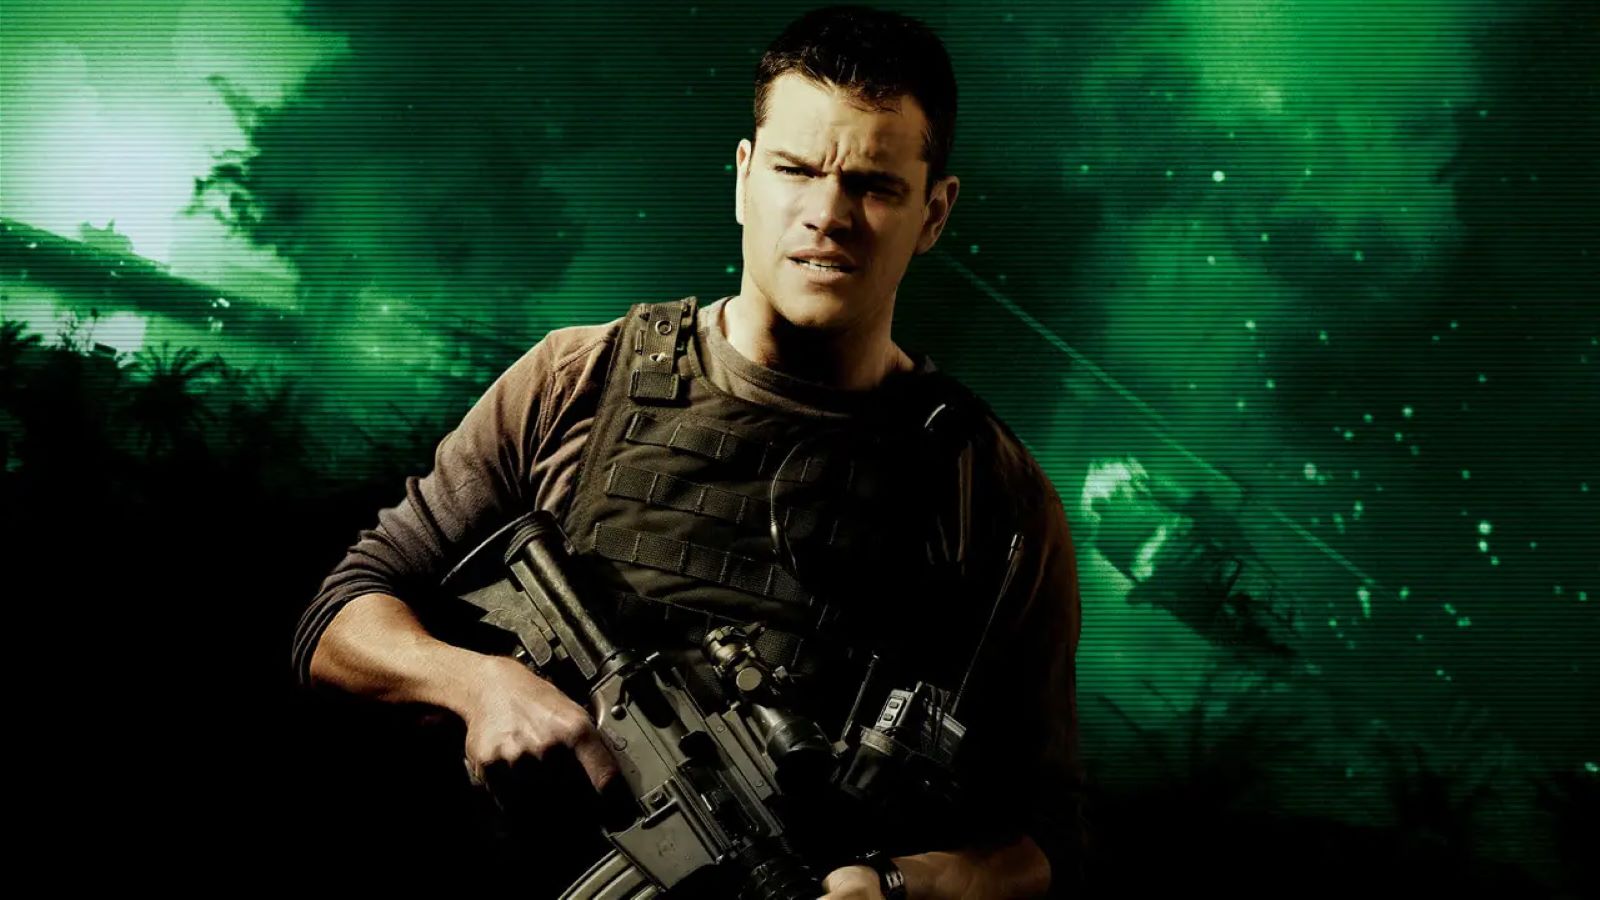 Green Zone stasera su Iris: trama, cast del film con Matt Damon basato su una storia vera